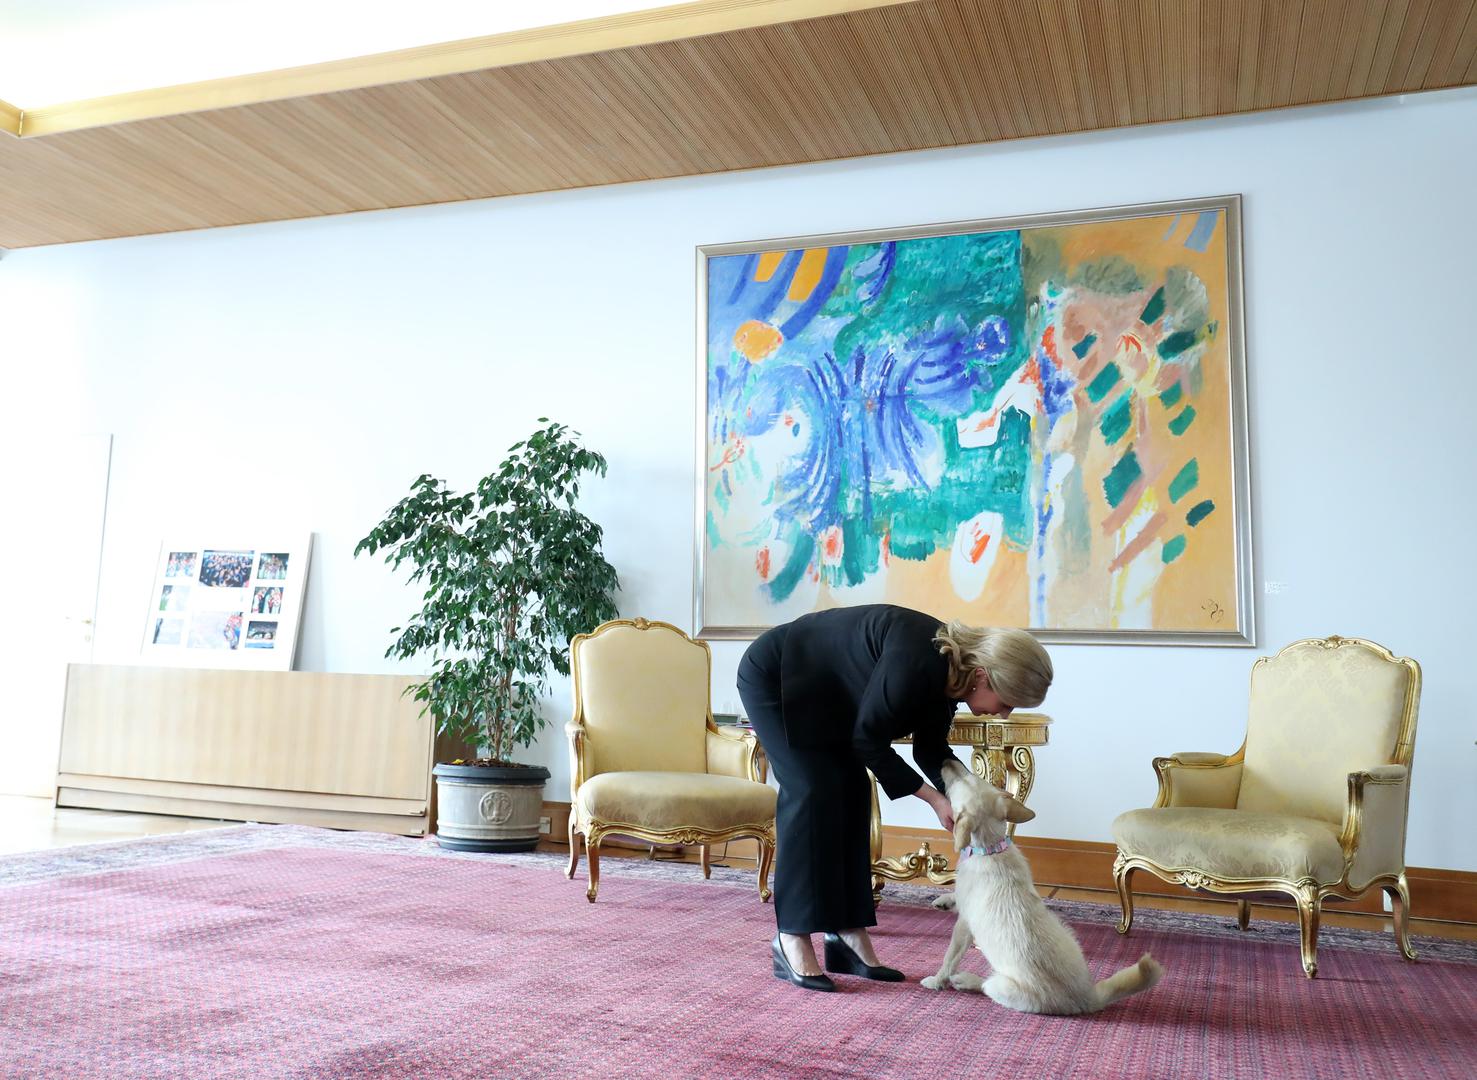 Predsjednica je nenadano, u listopadu prošle godine odlučila udomiti kujicu Kiki iz virovitičkog Skloništa za životinje.